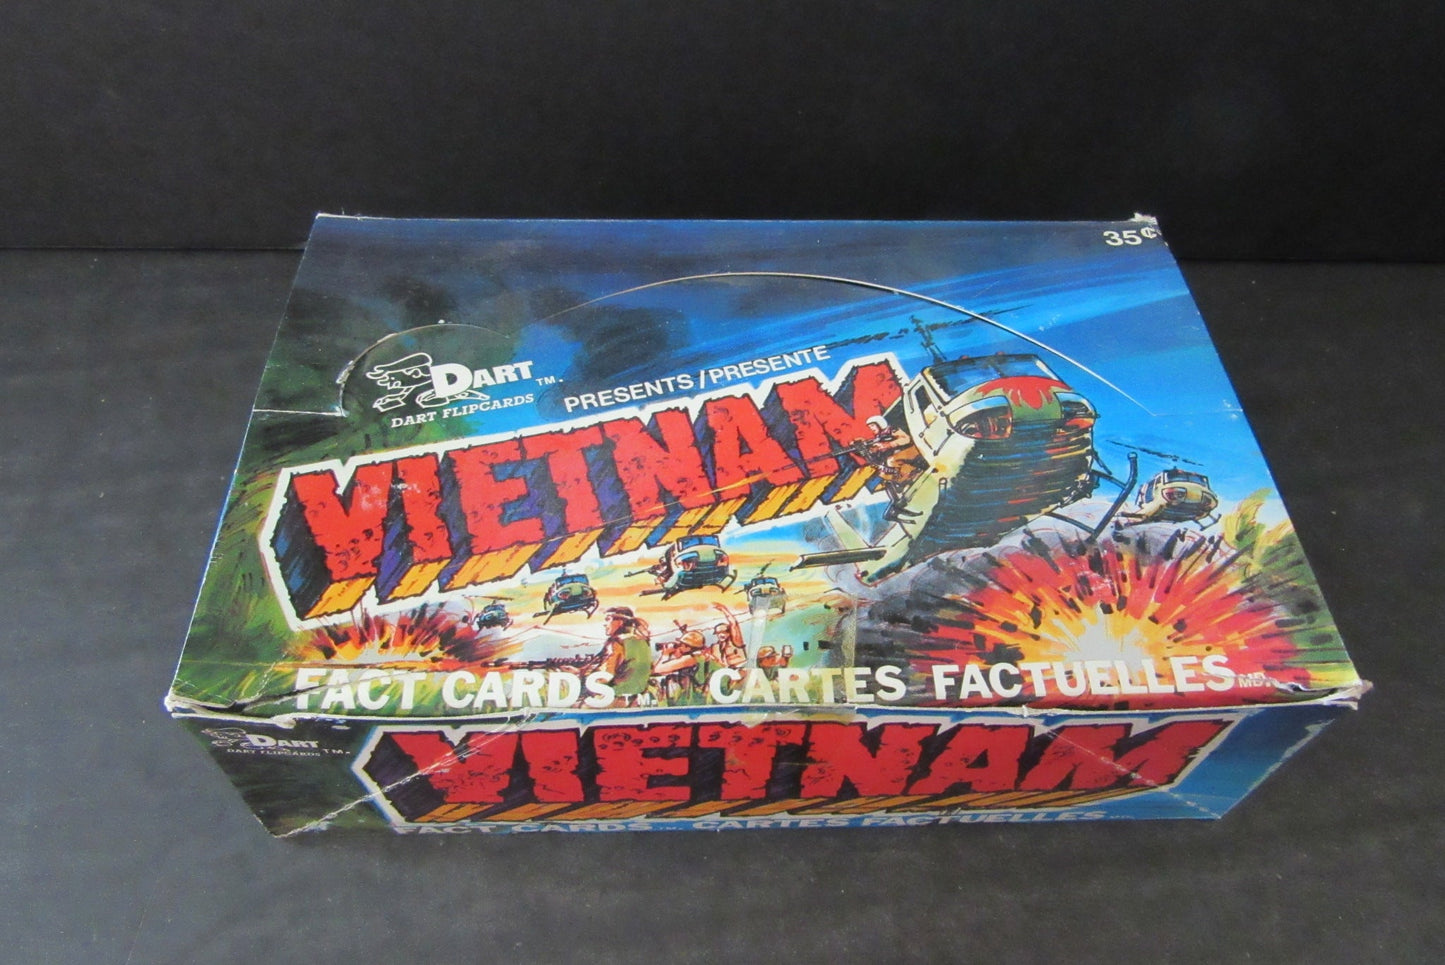 1988 Dart Vietnam Fact Card Unopened Box